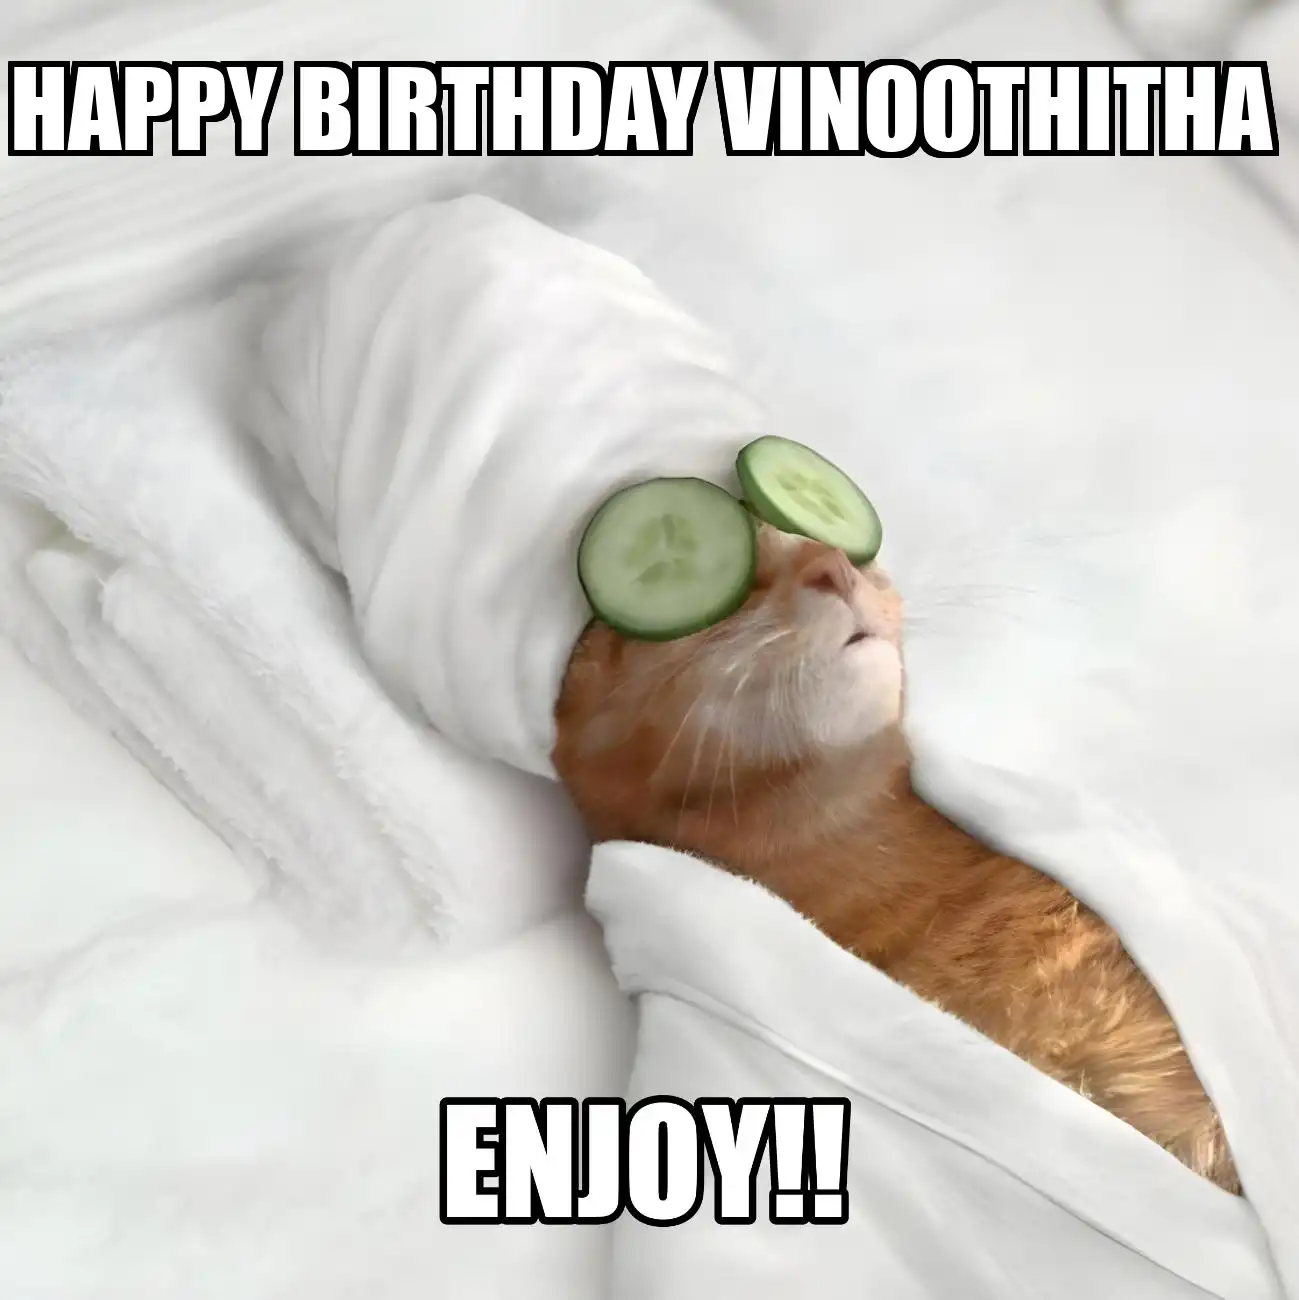 Happy Birthday Vinoothitha Enjoy Cat Meme